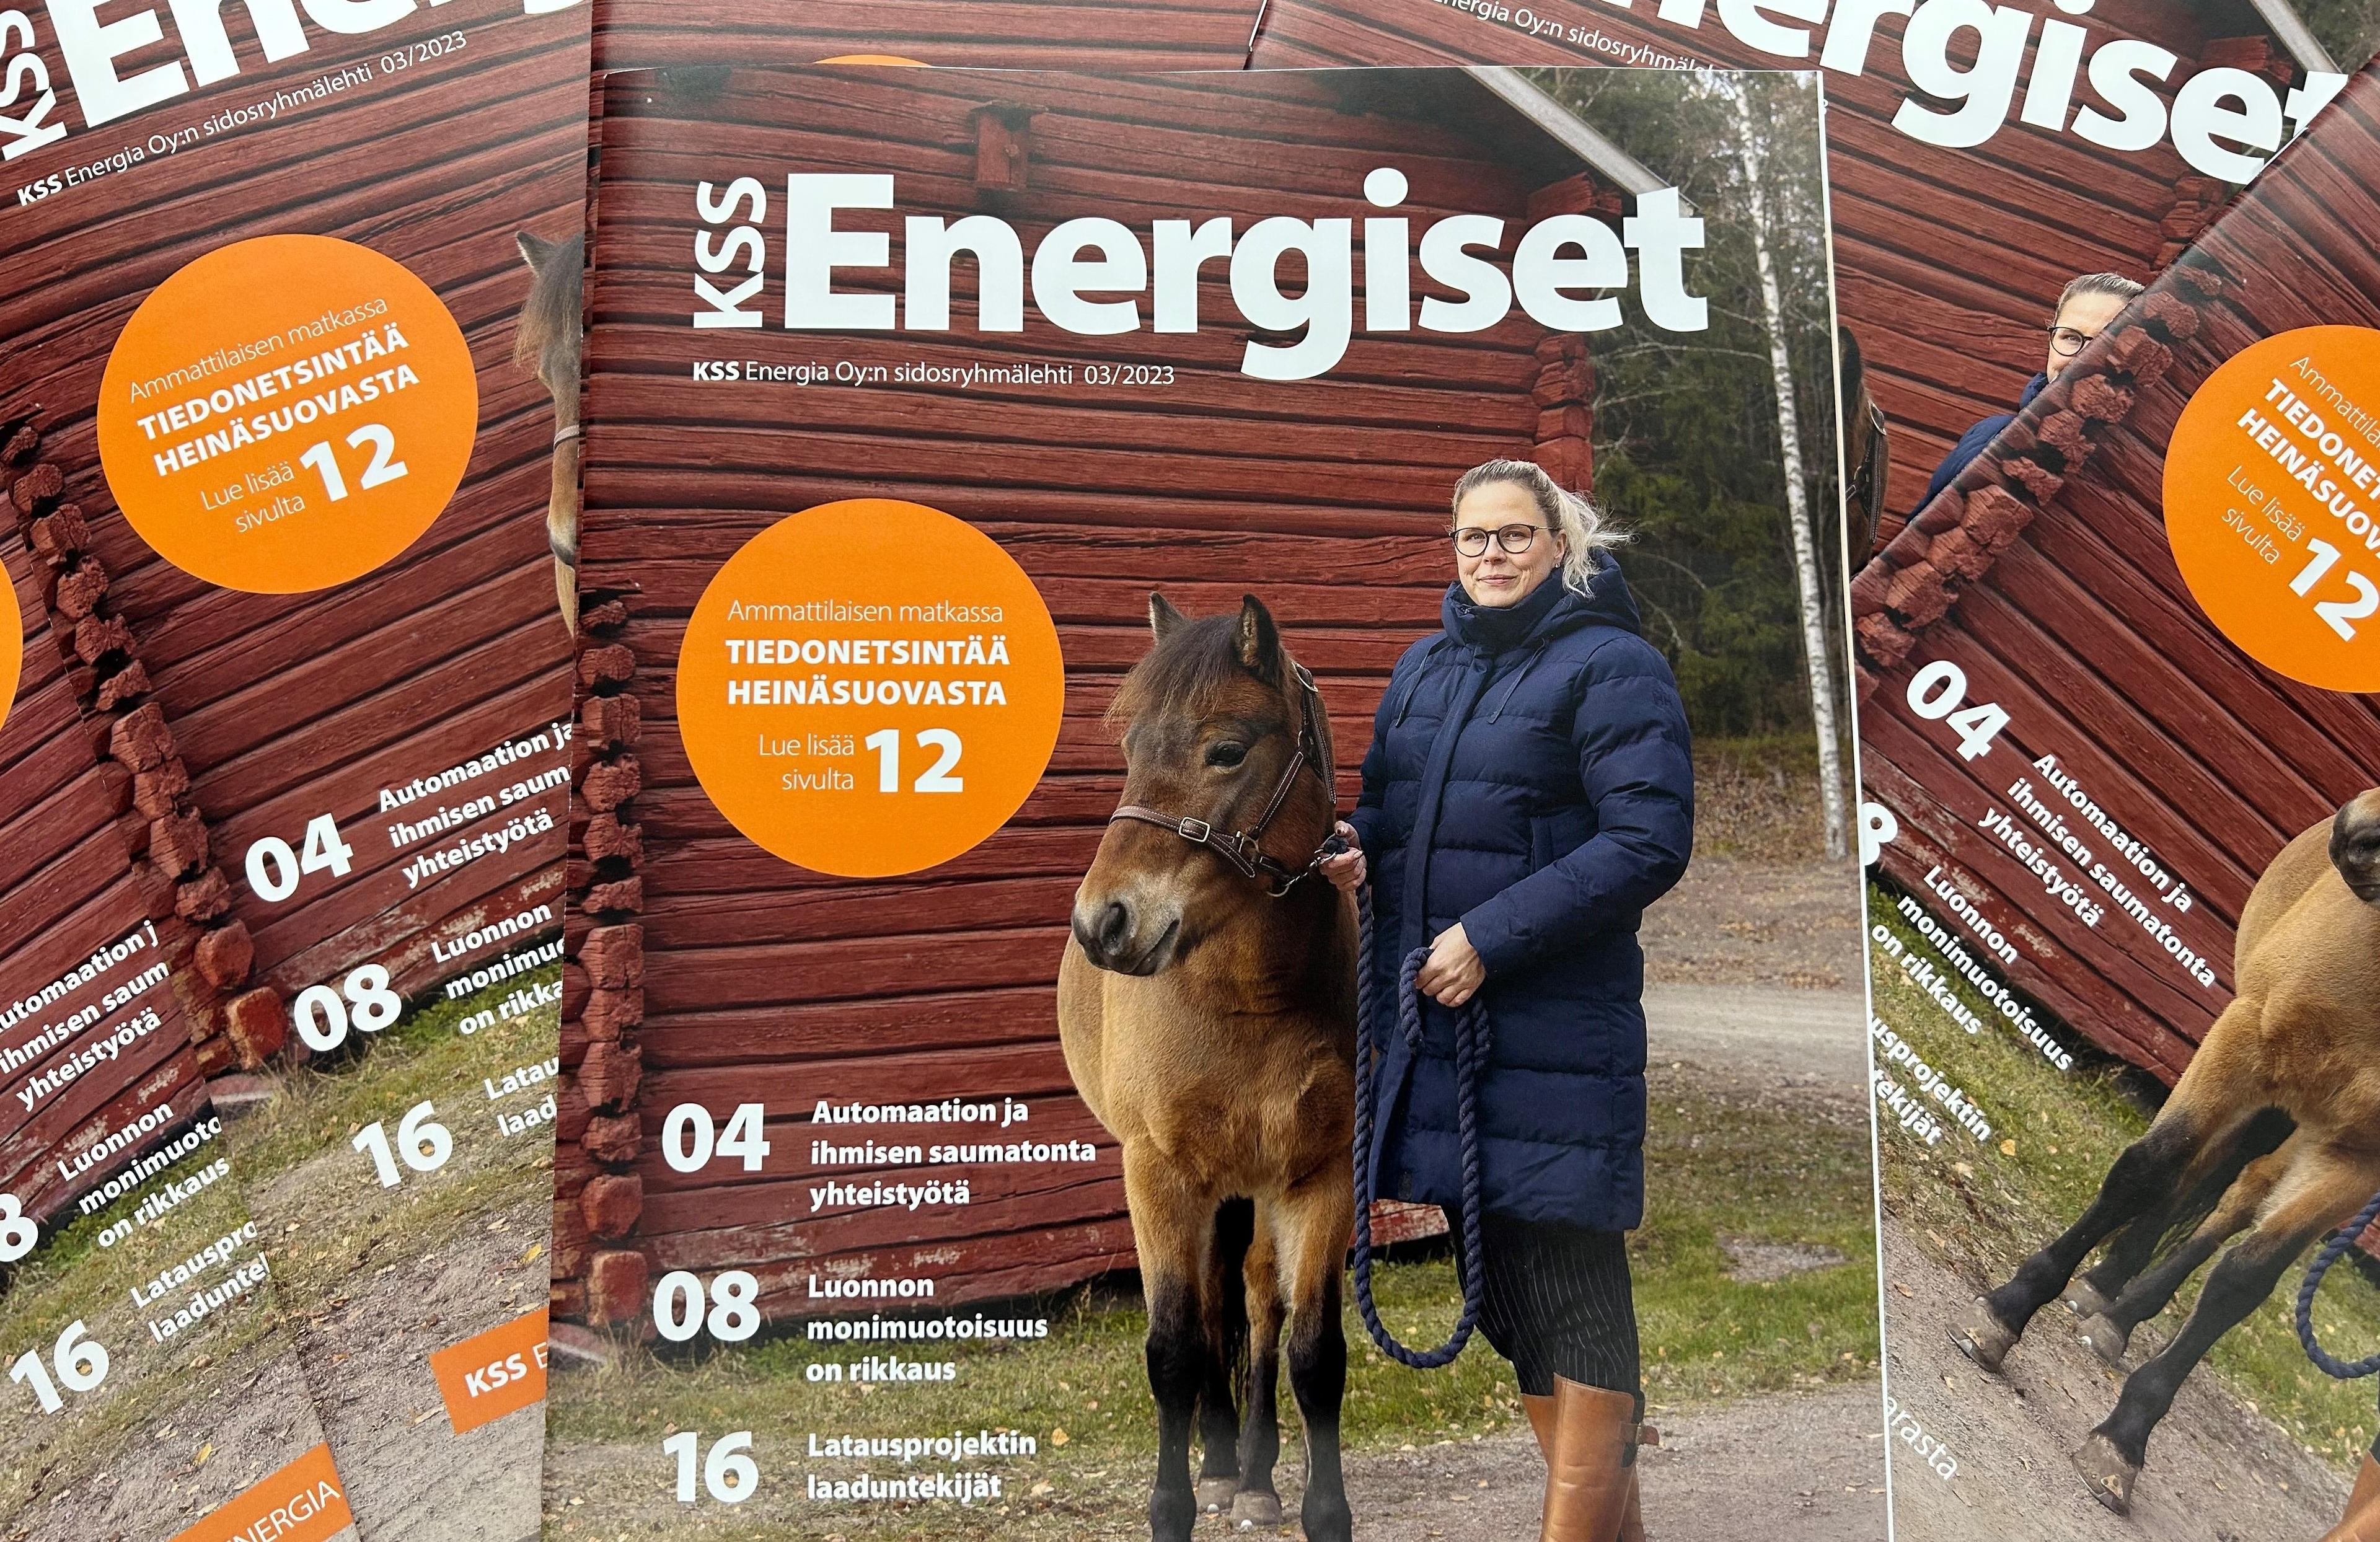 Kuvassa nippu KSS Energiset-lehtiä, joiden kansikuvassa on sinitakkinen vaaleahiuksinen nainen vierellään ruskea poni. Taustalla näkyy punaiseksi maalattu hirsirakennus sekä hiekkatietä, jonka takana kuusimetsää.